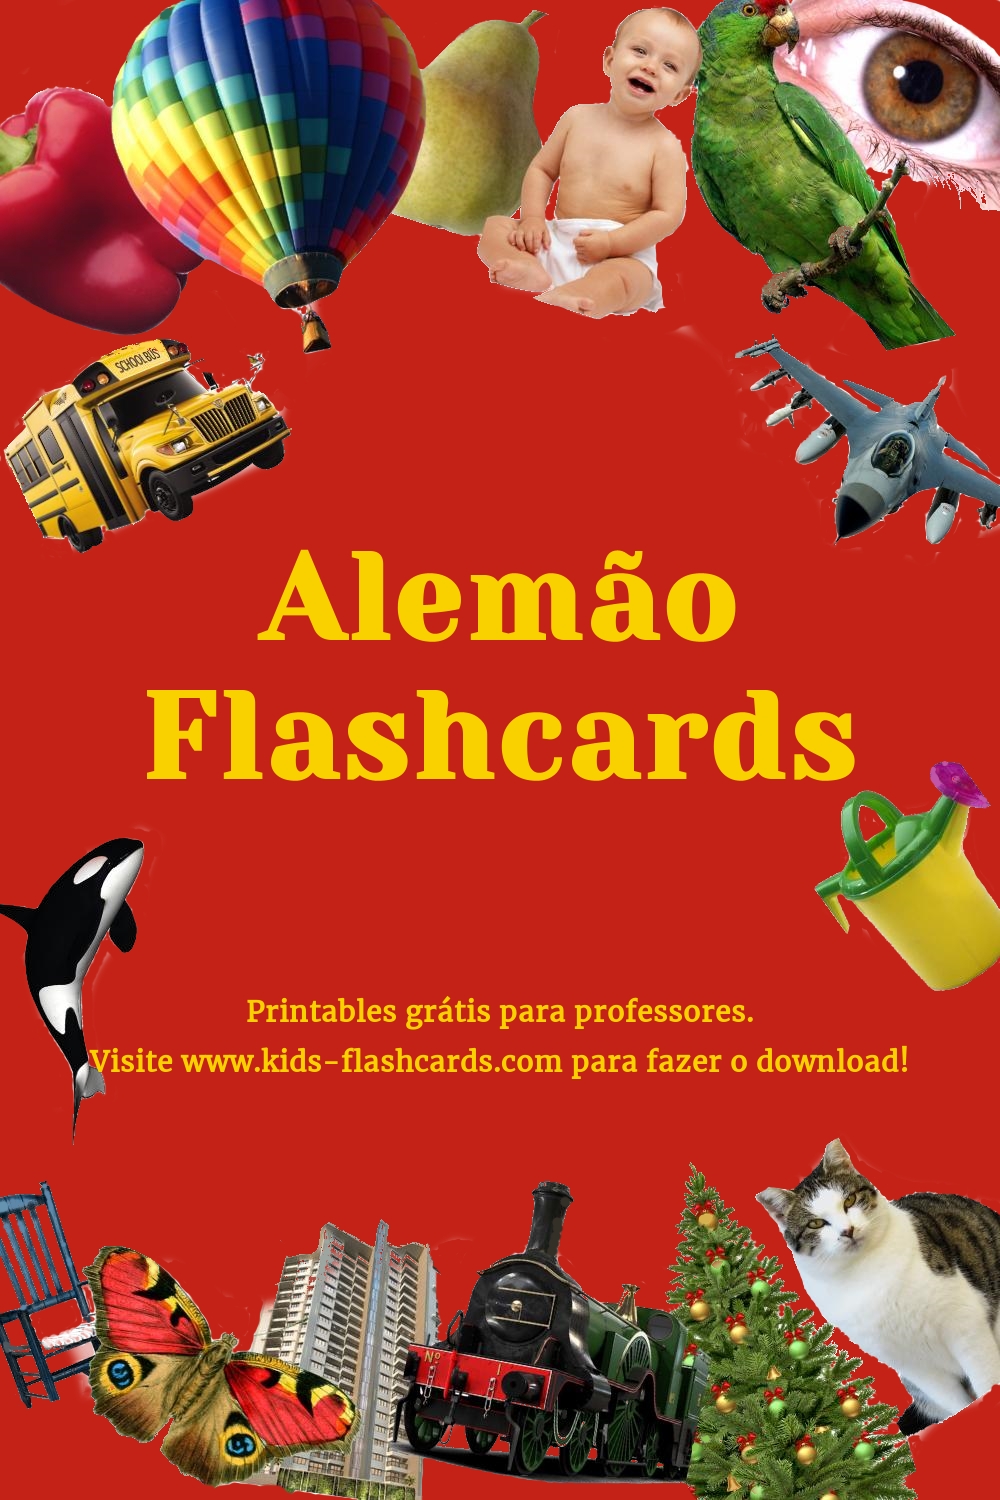 Os 10 Melhores Criadores de Flashcards Online e Grátis para Professores